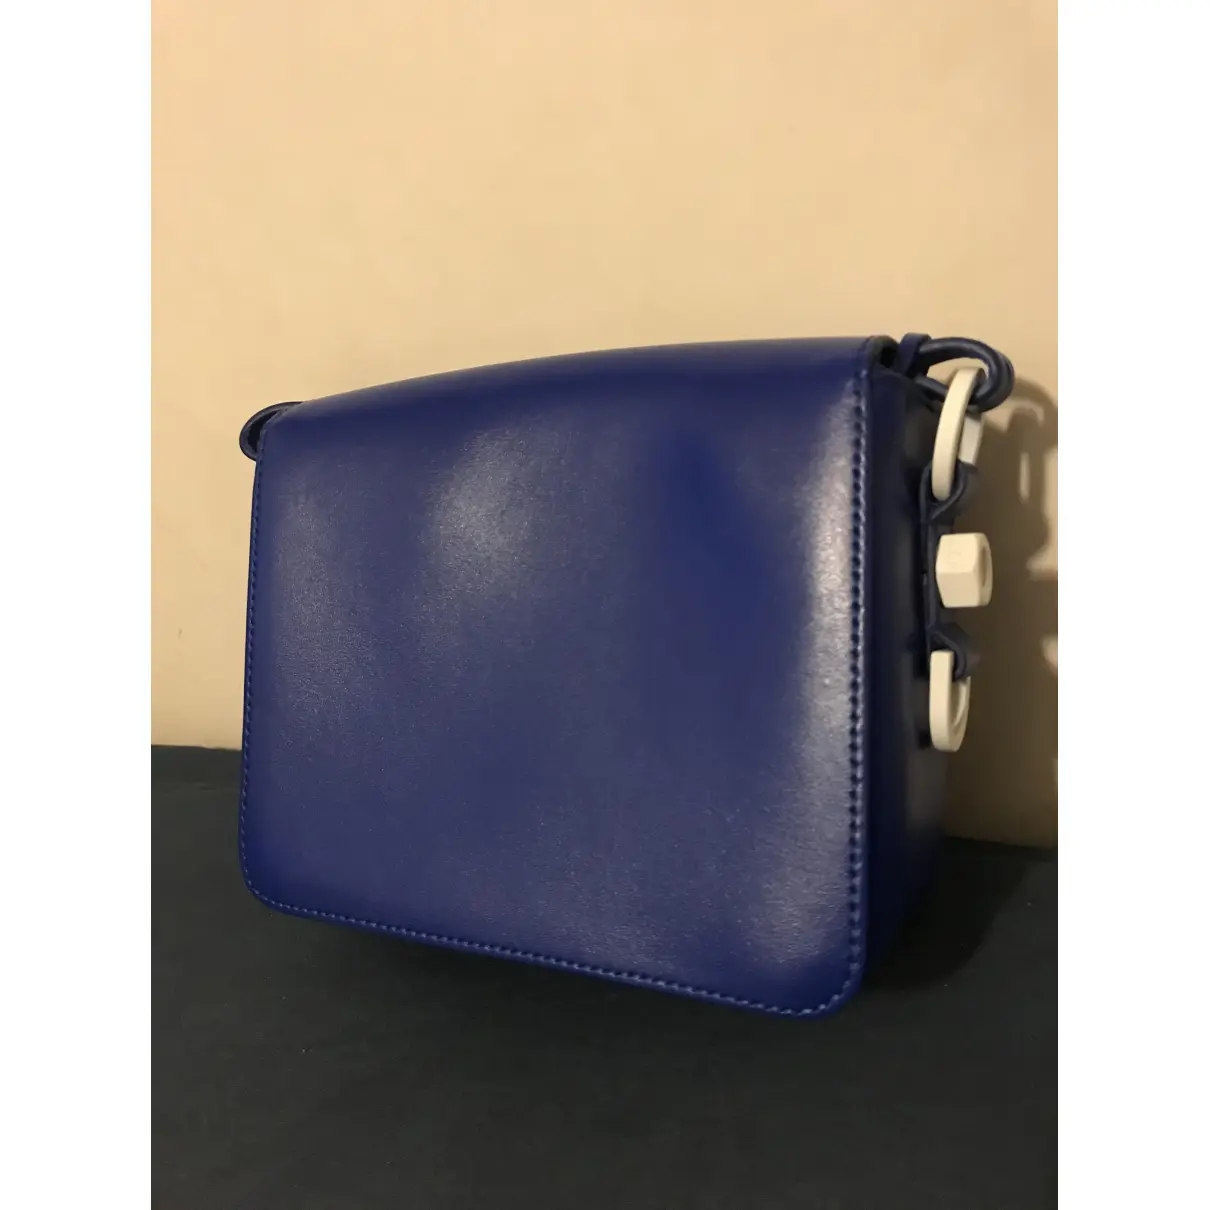 Buy Off-White Binder leather handbag online